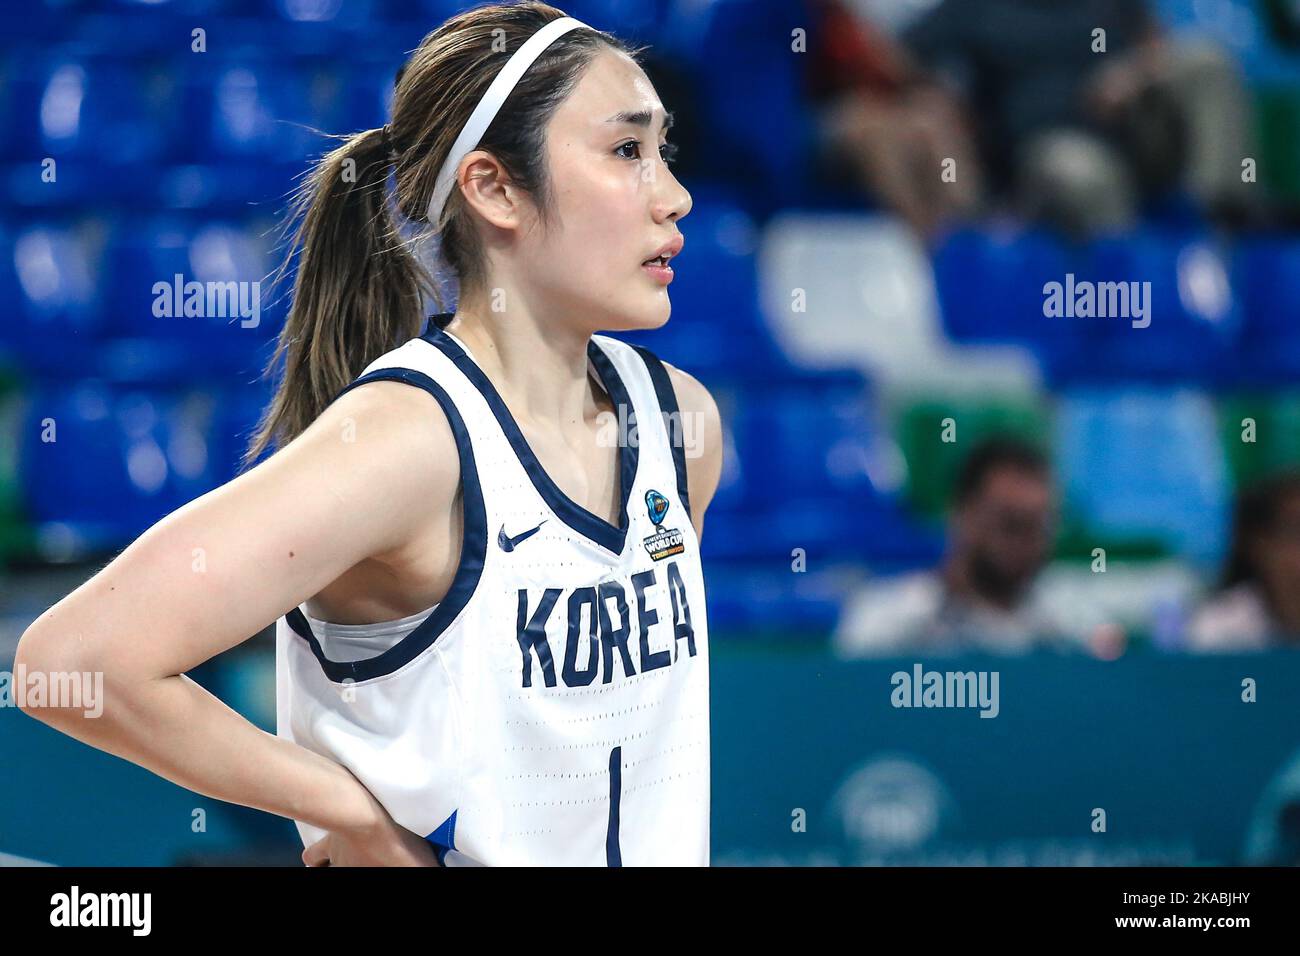 Espagne, Ténérife, 25 septembre 2018: Le joueur de basket-ball coréen Hana Park lors de la coupe du monde de basket-ball féminin de la FIBA Banque D'Images